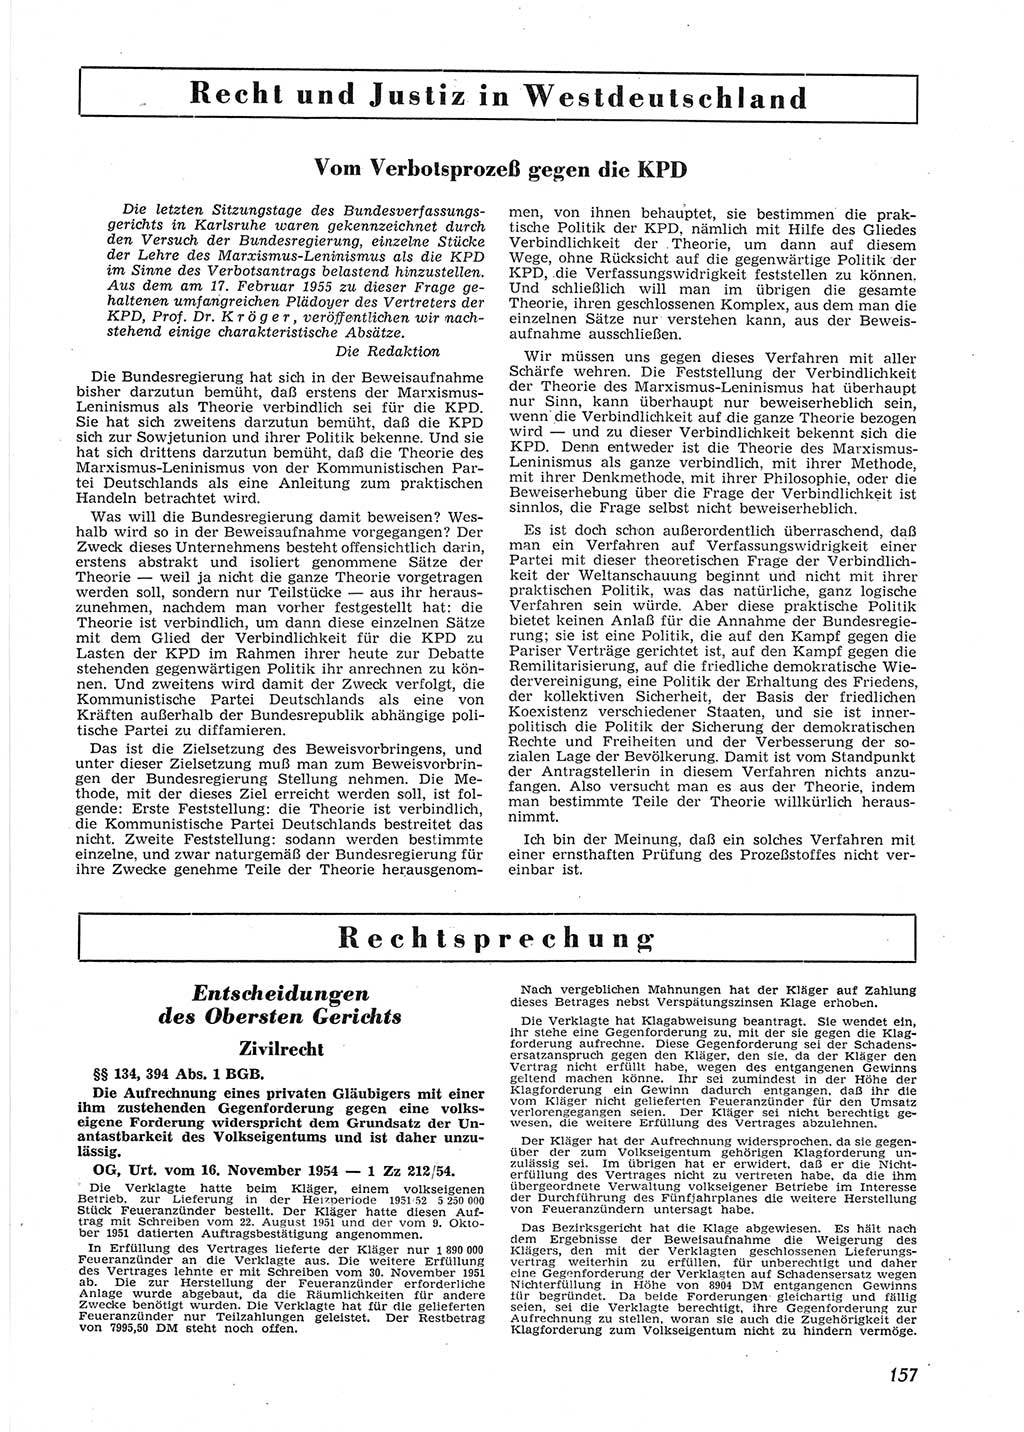 Neue Justiz (NJ), Zeitschrift für Recht und Rechtswissenschaft [Deutsche Demokratische Republik (DDR)], 9. Jahrgang 1955, Seite 157 (NJ DDR 1955, S. 157)